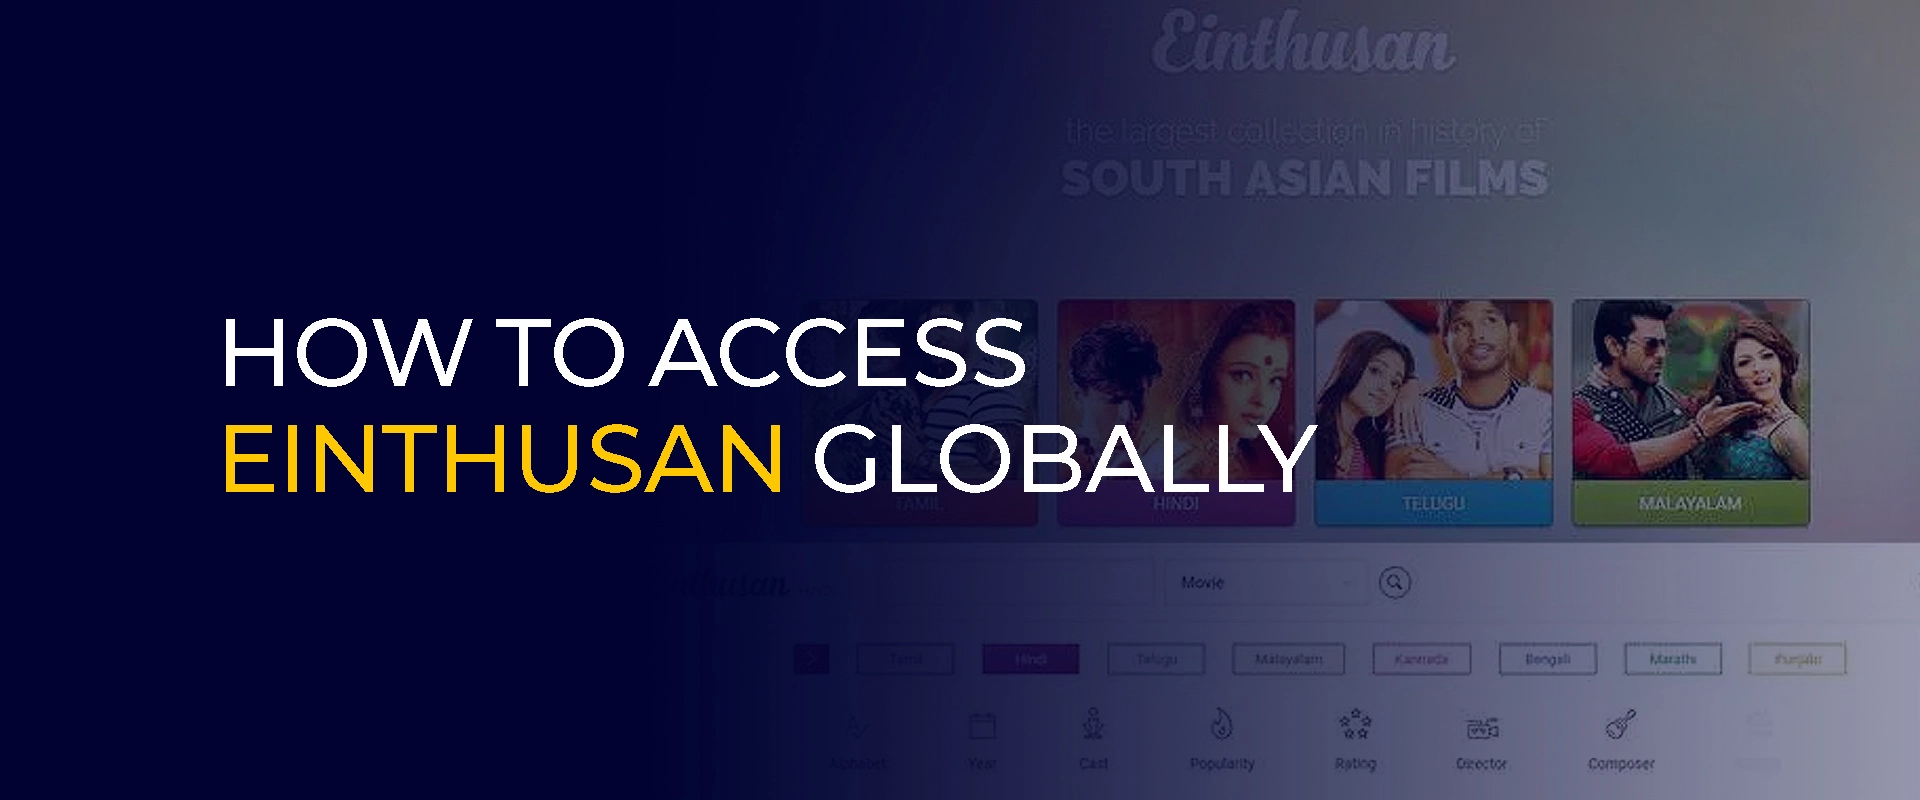 Jak uzyskać dostęp do Einthusan na całym świecie